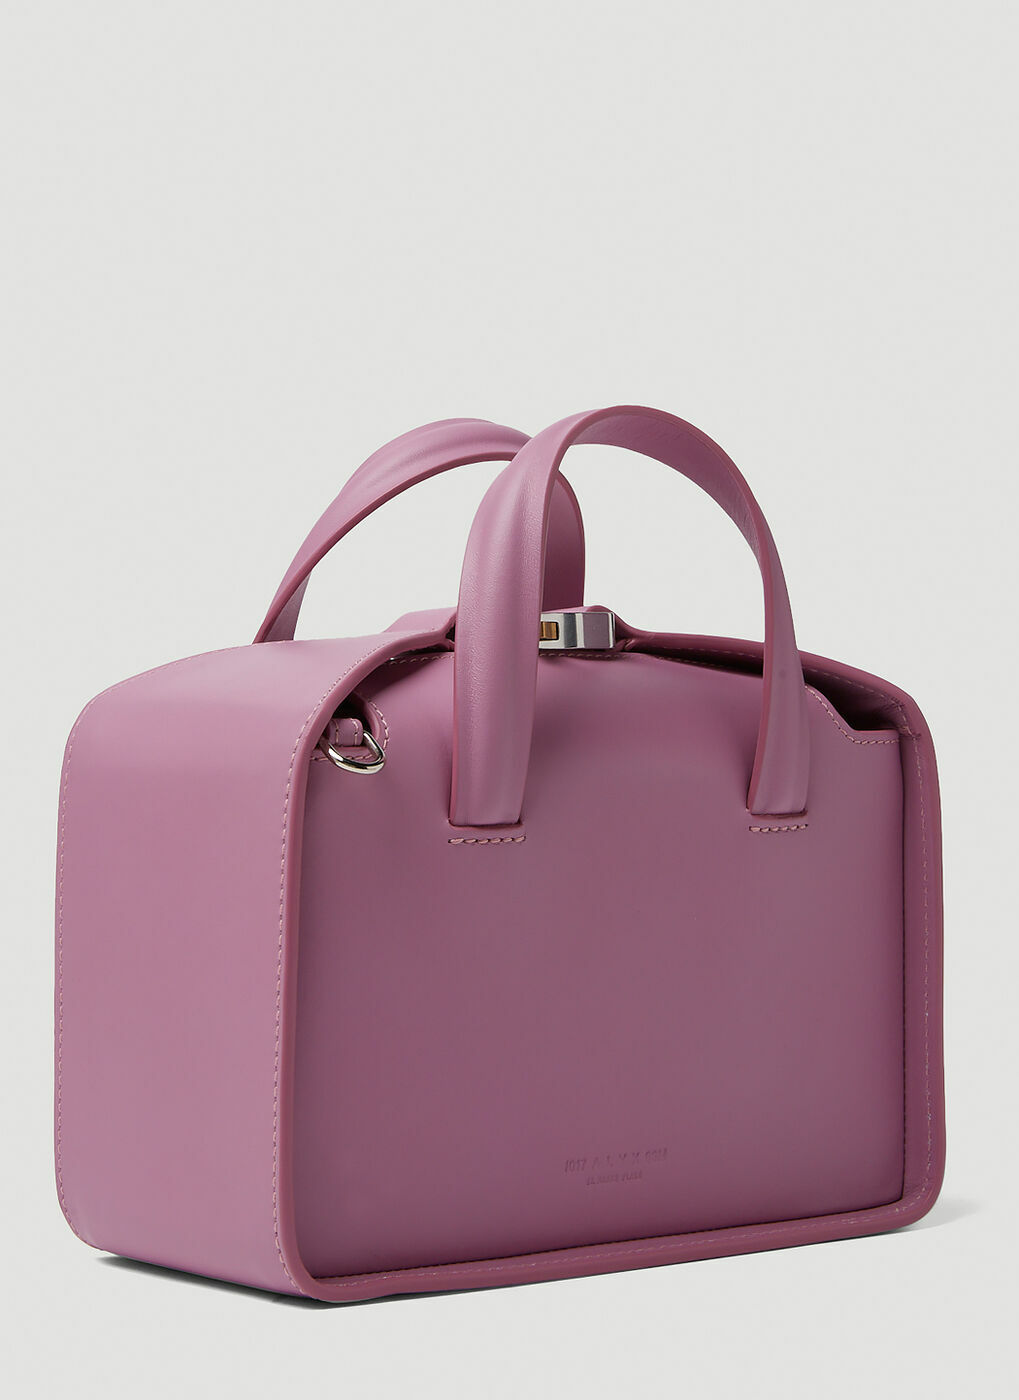 Brie Handbag in Pink